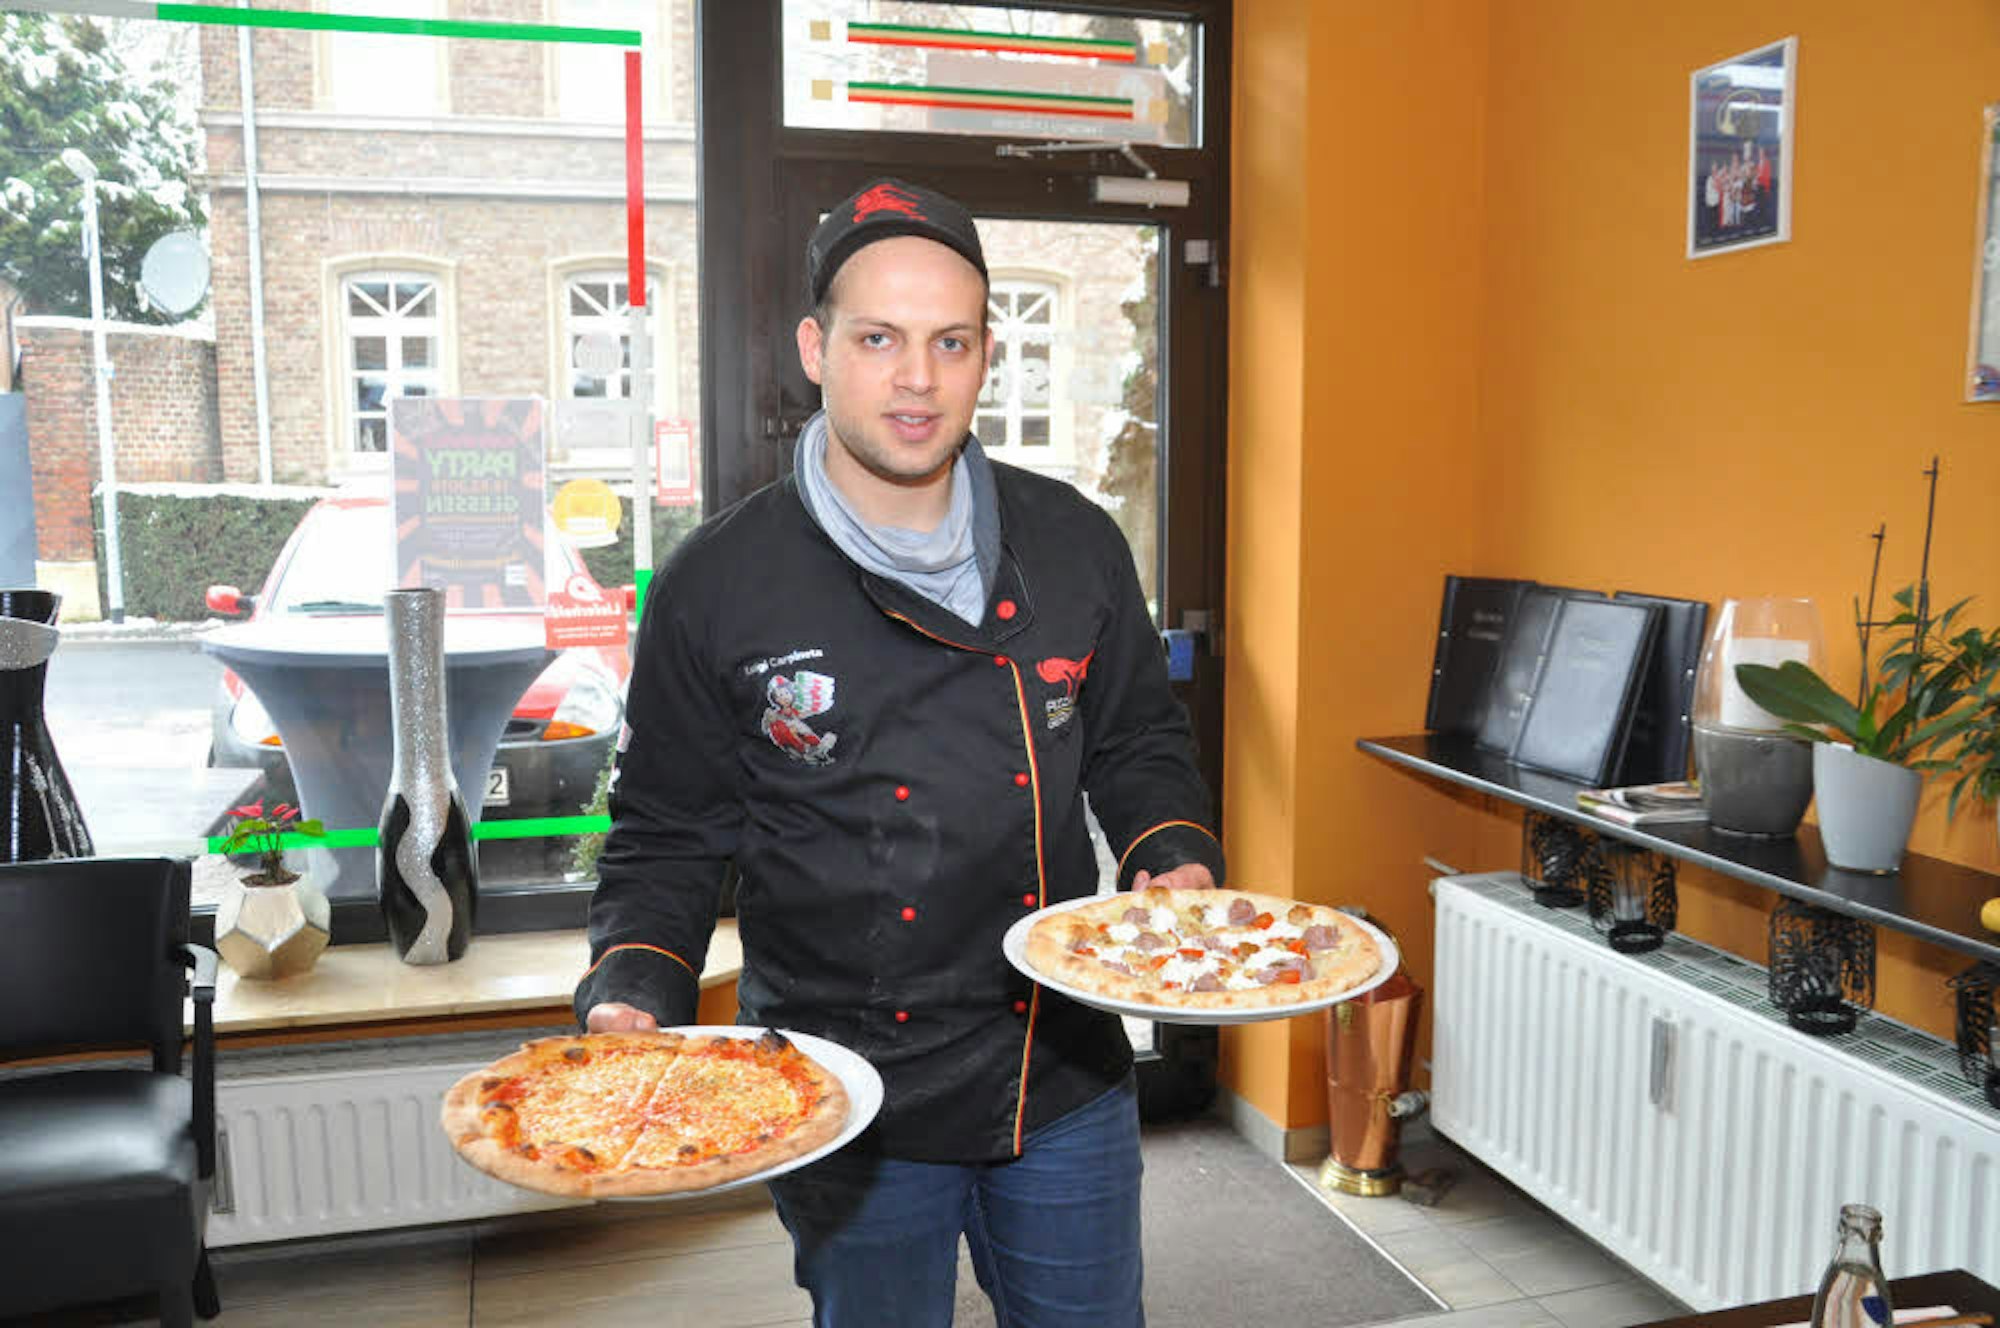 100 Pizza-Varianten bereitet der Pizzaiolo im Restaurant „La Strada“ zu. Jetzt hofft er auf eine gute Platzierung bei der Weltmeisterschaft.